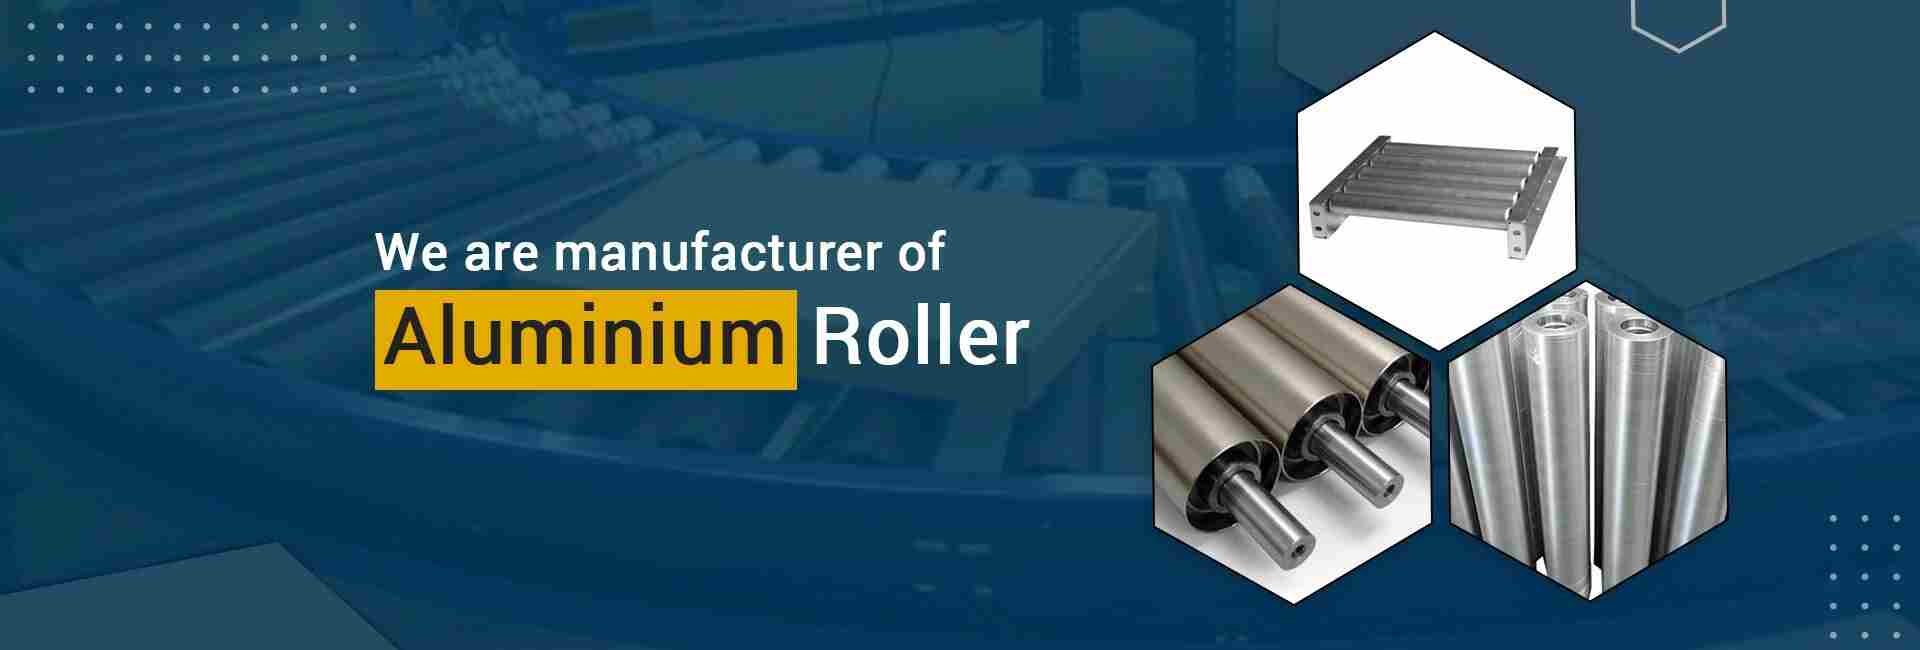 Aluminium Roller Manufacturer